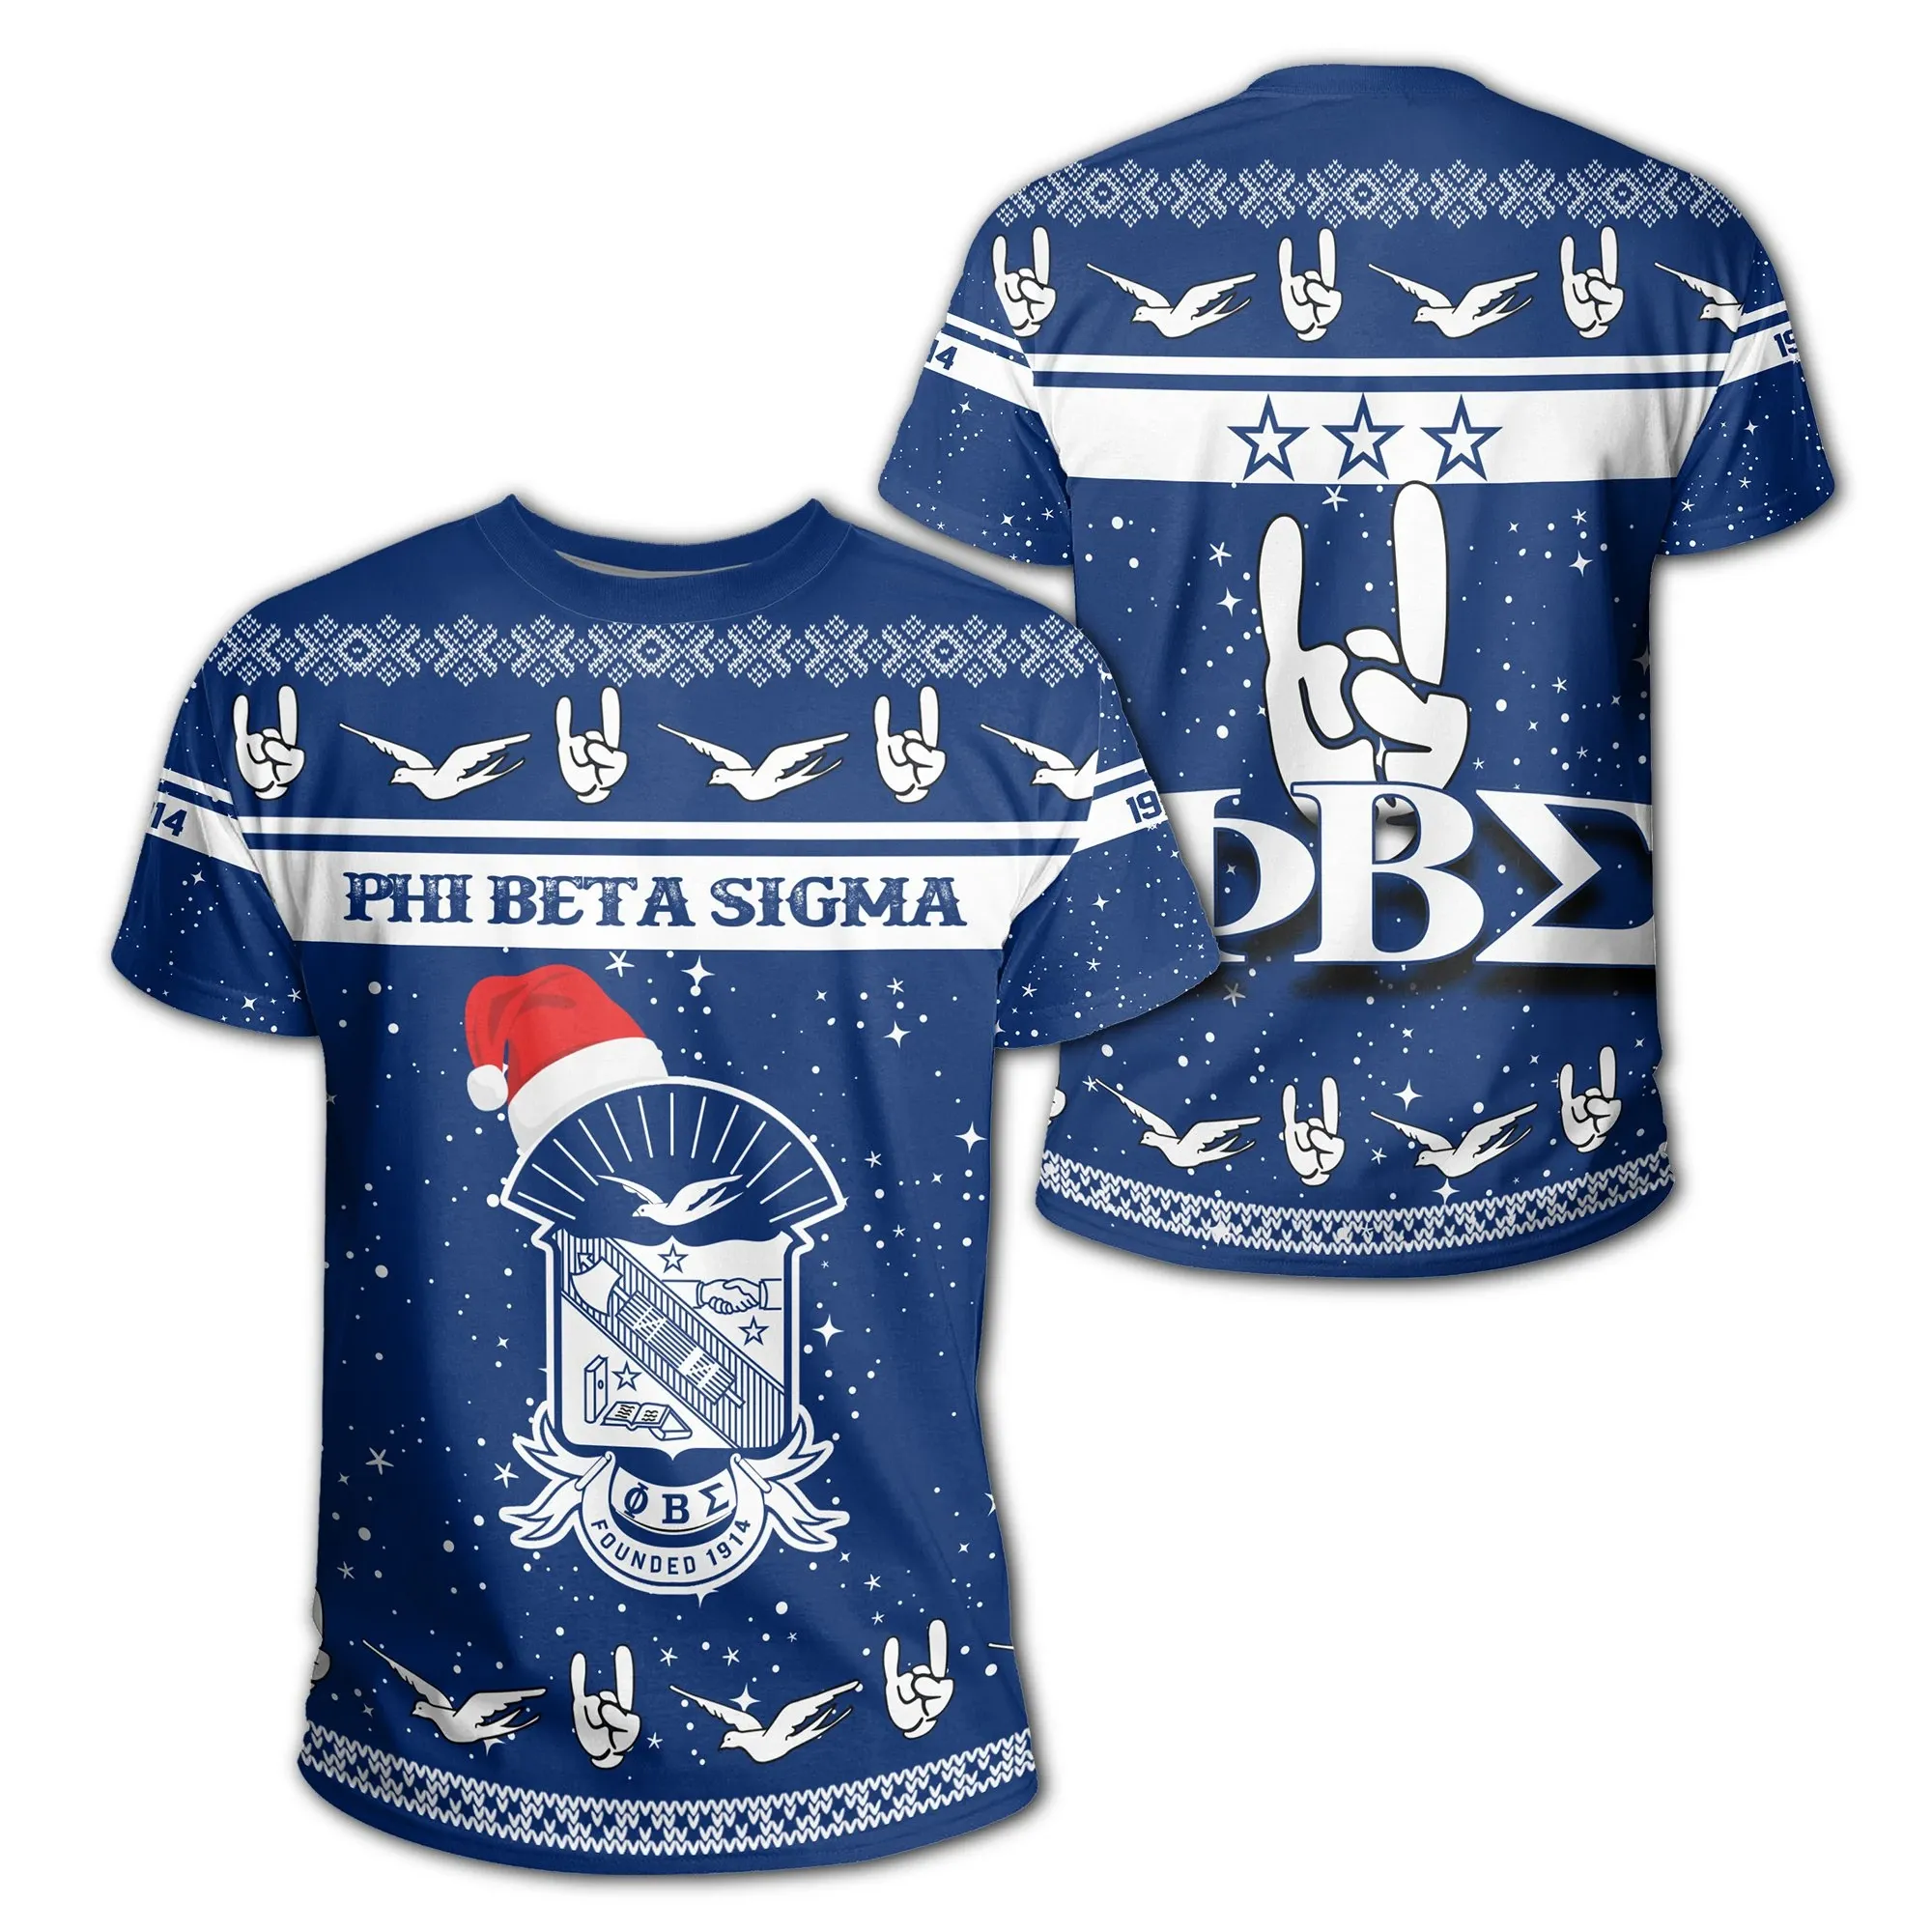 African T-shirt – Zeta Phi Beta 120 Sorority Tee